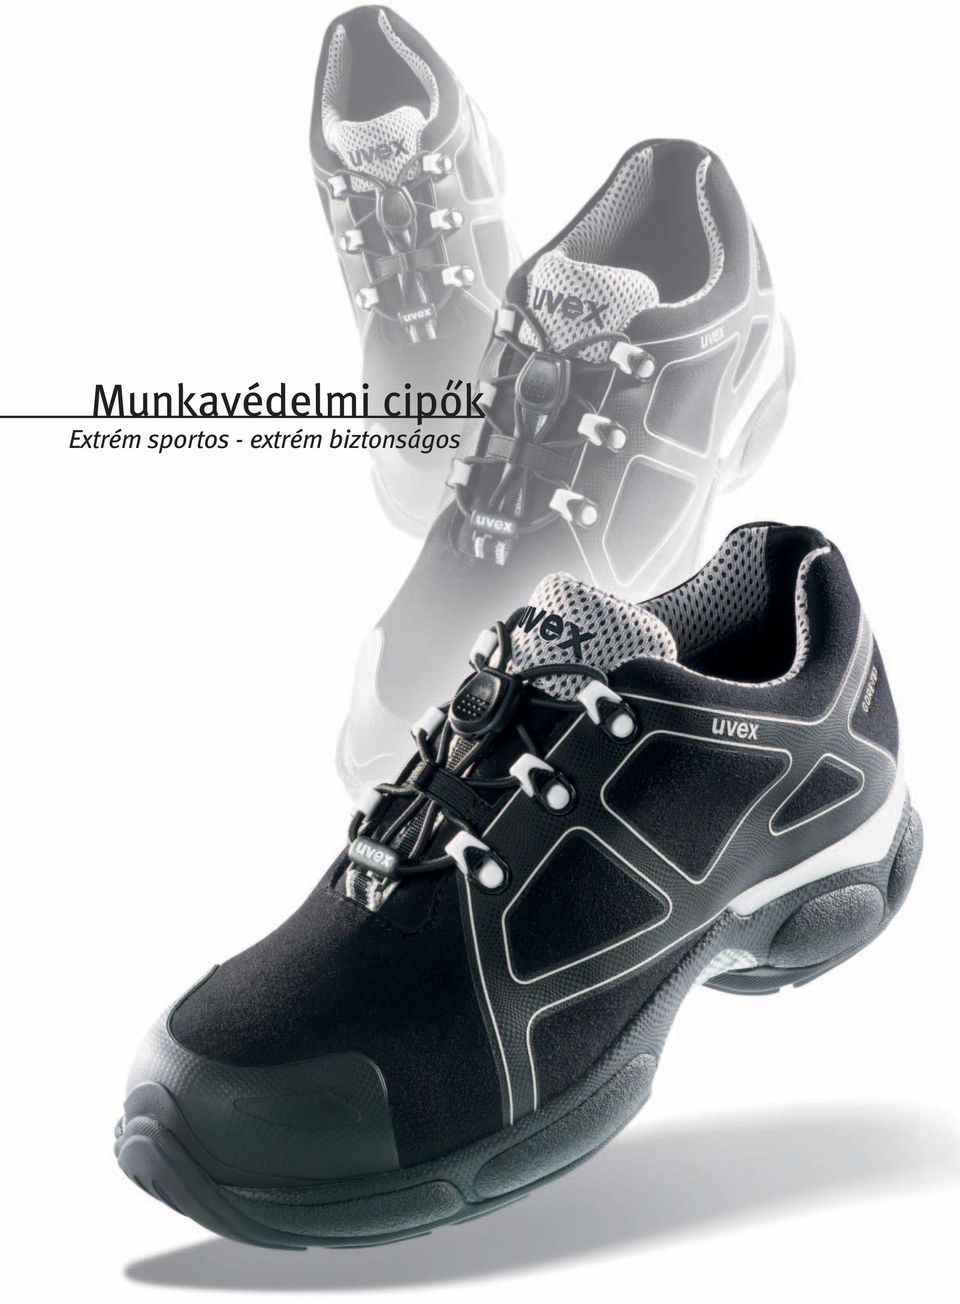 Munkavédelmi cipők. Extrém sportos - extrém biztonságos - PDF Free Download